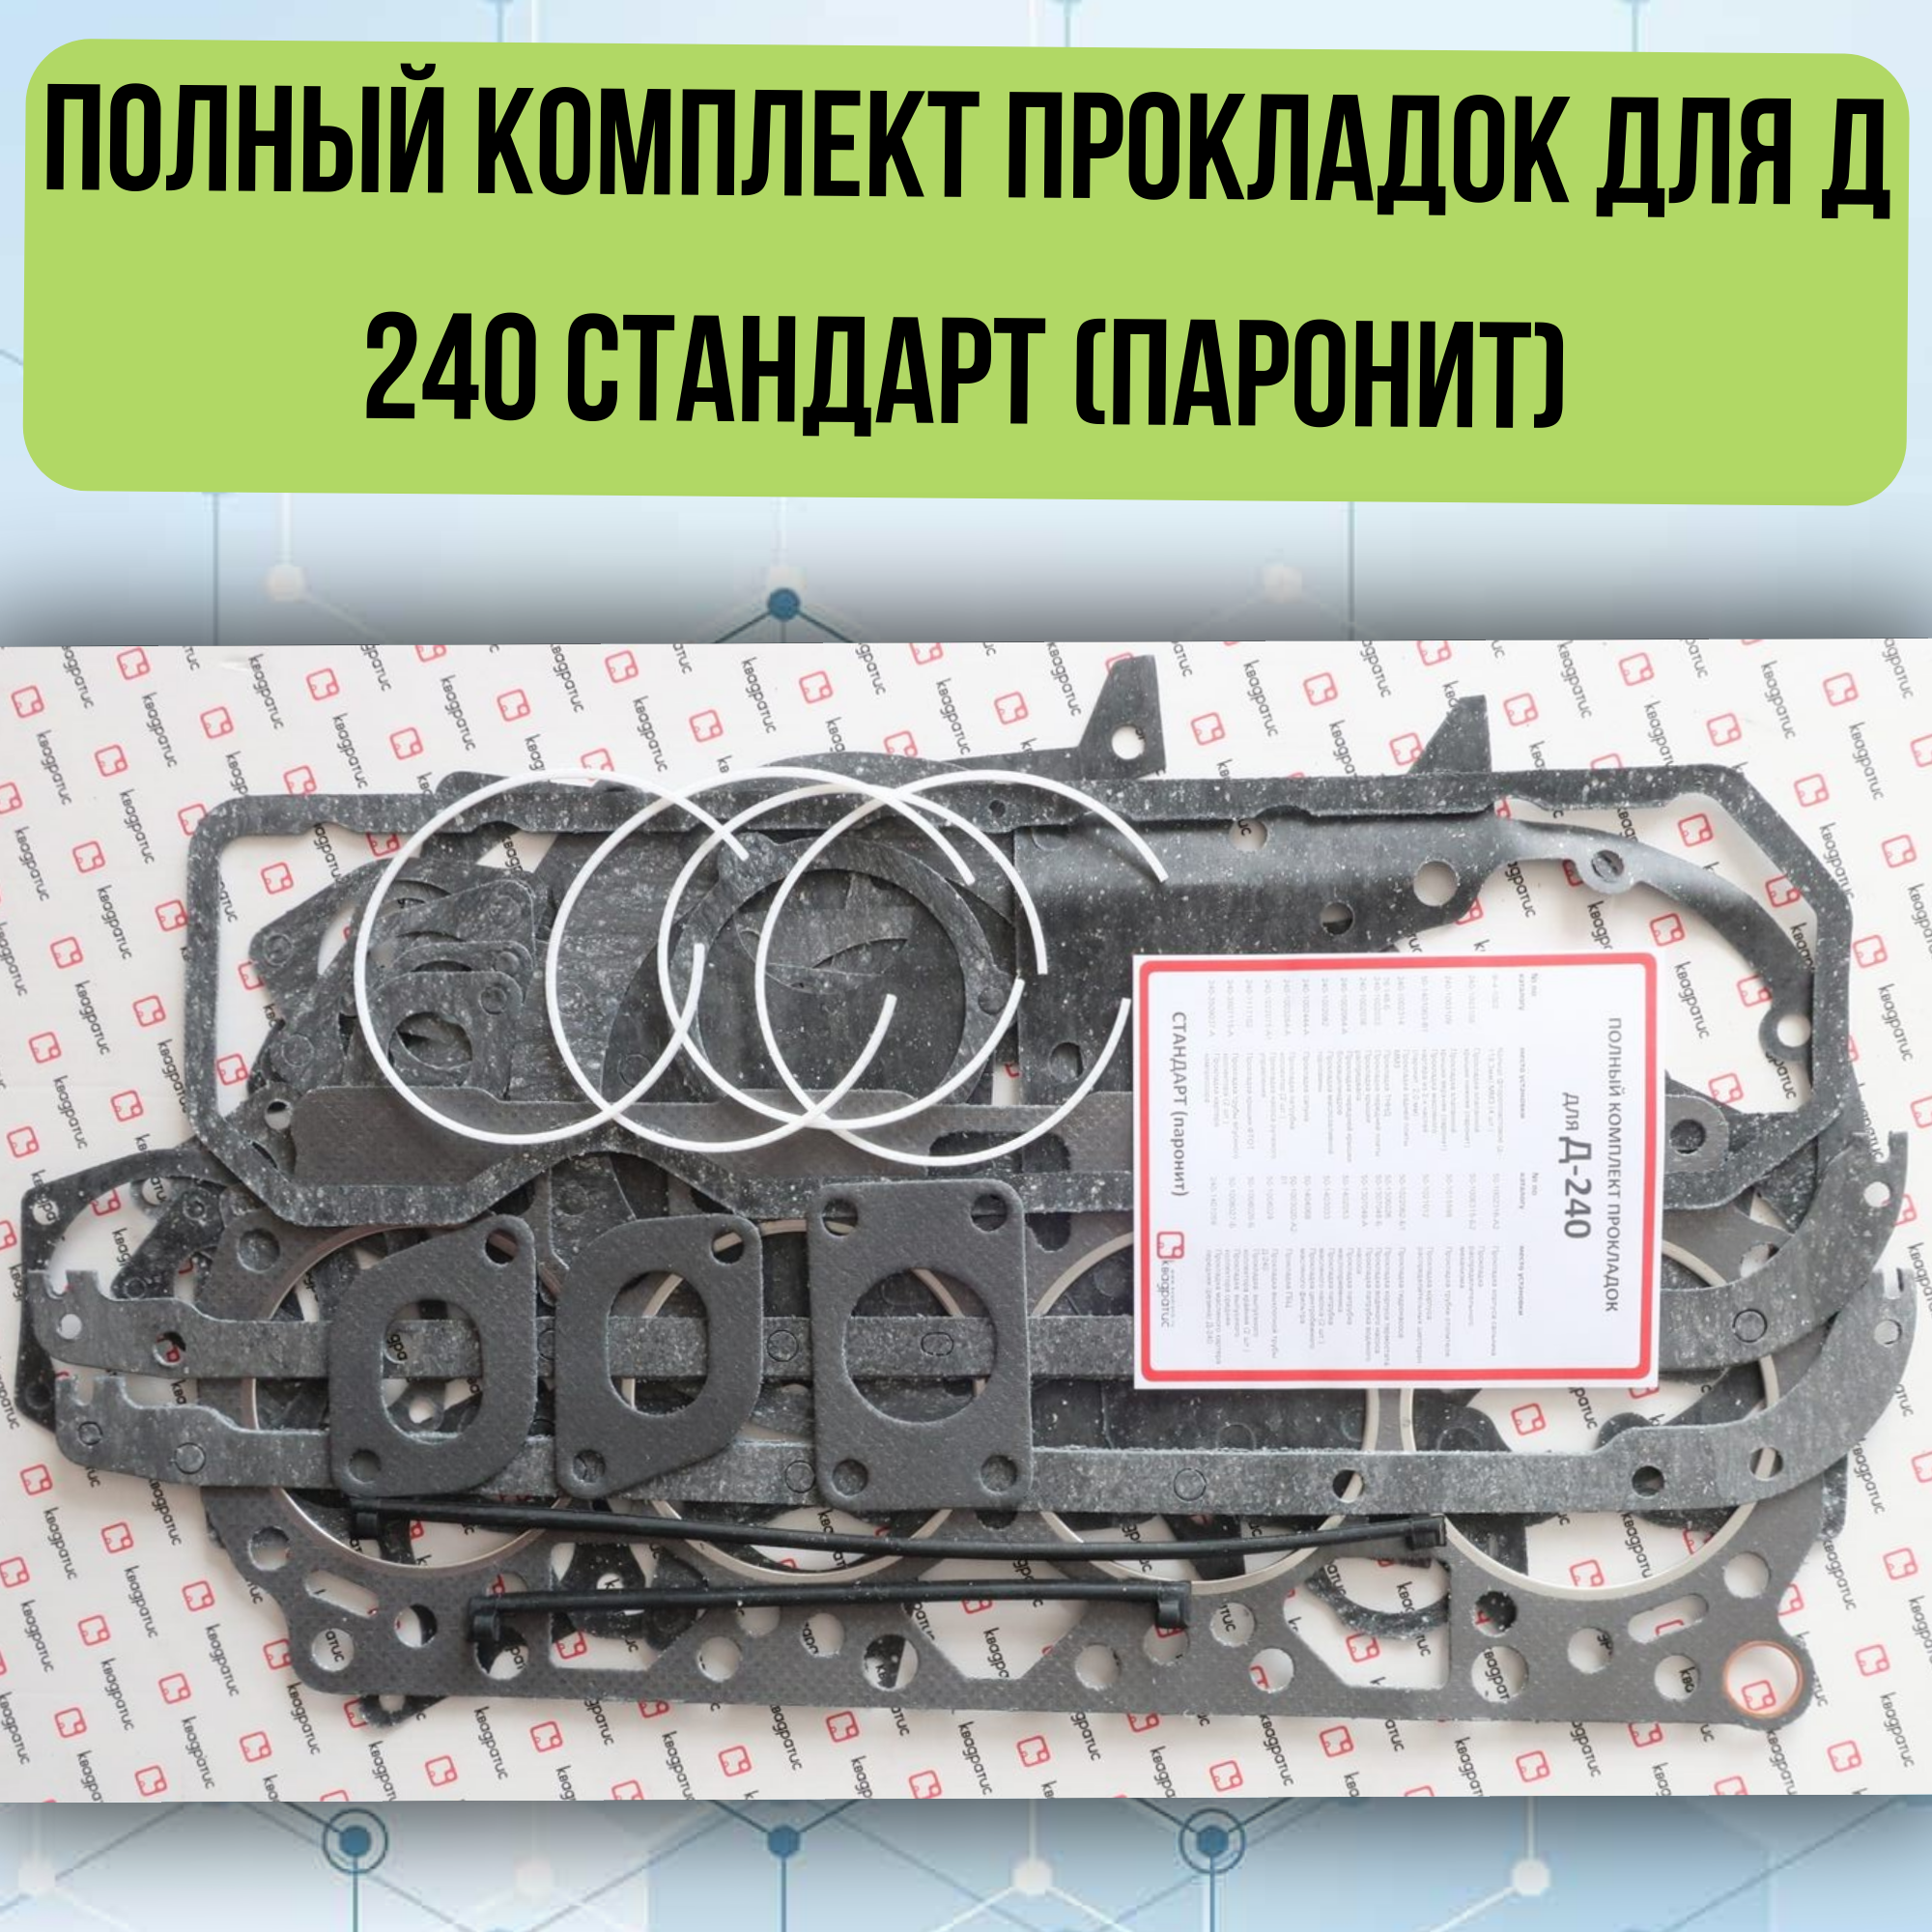 Полный комплект прокладок для Д 240 Стандарт (паронит) KVP-240-3906022-88-02